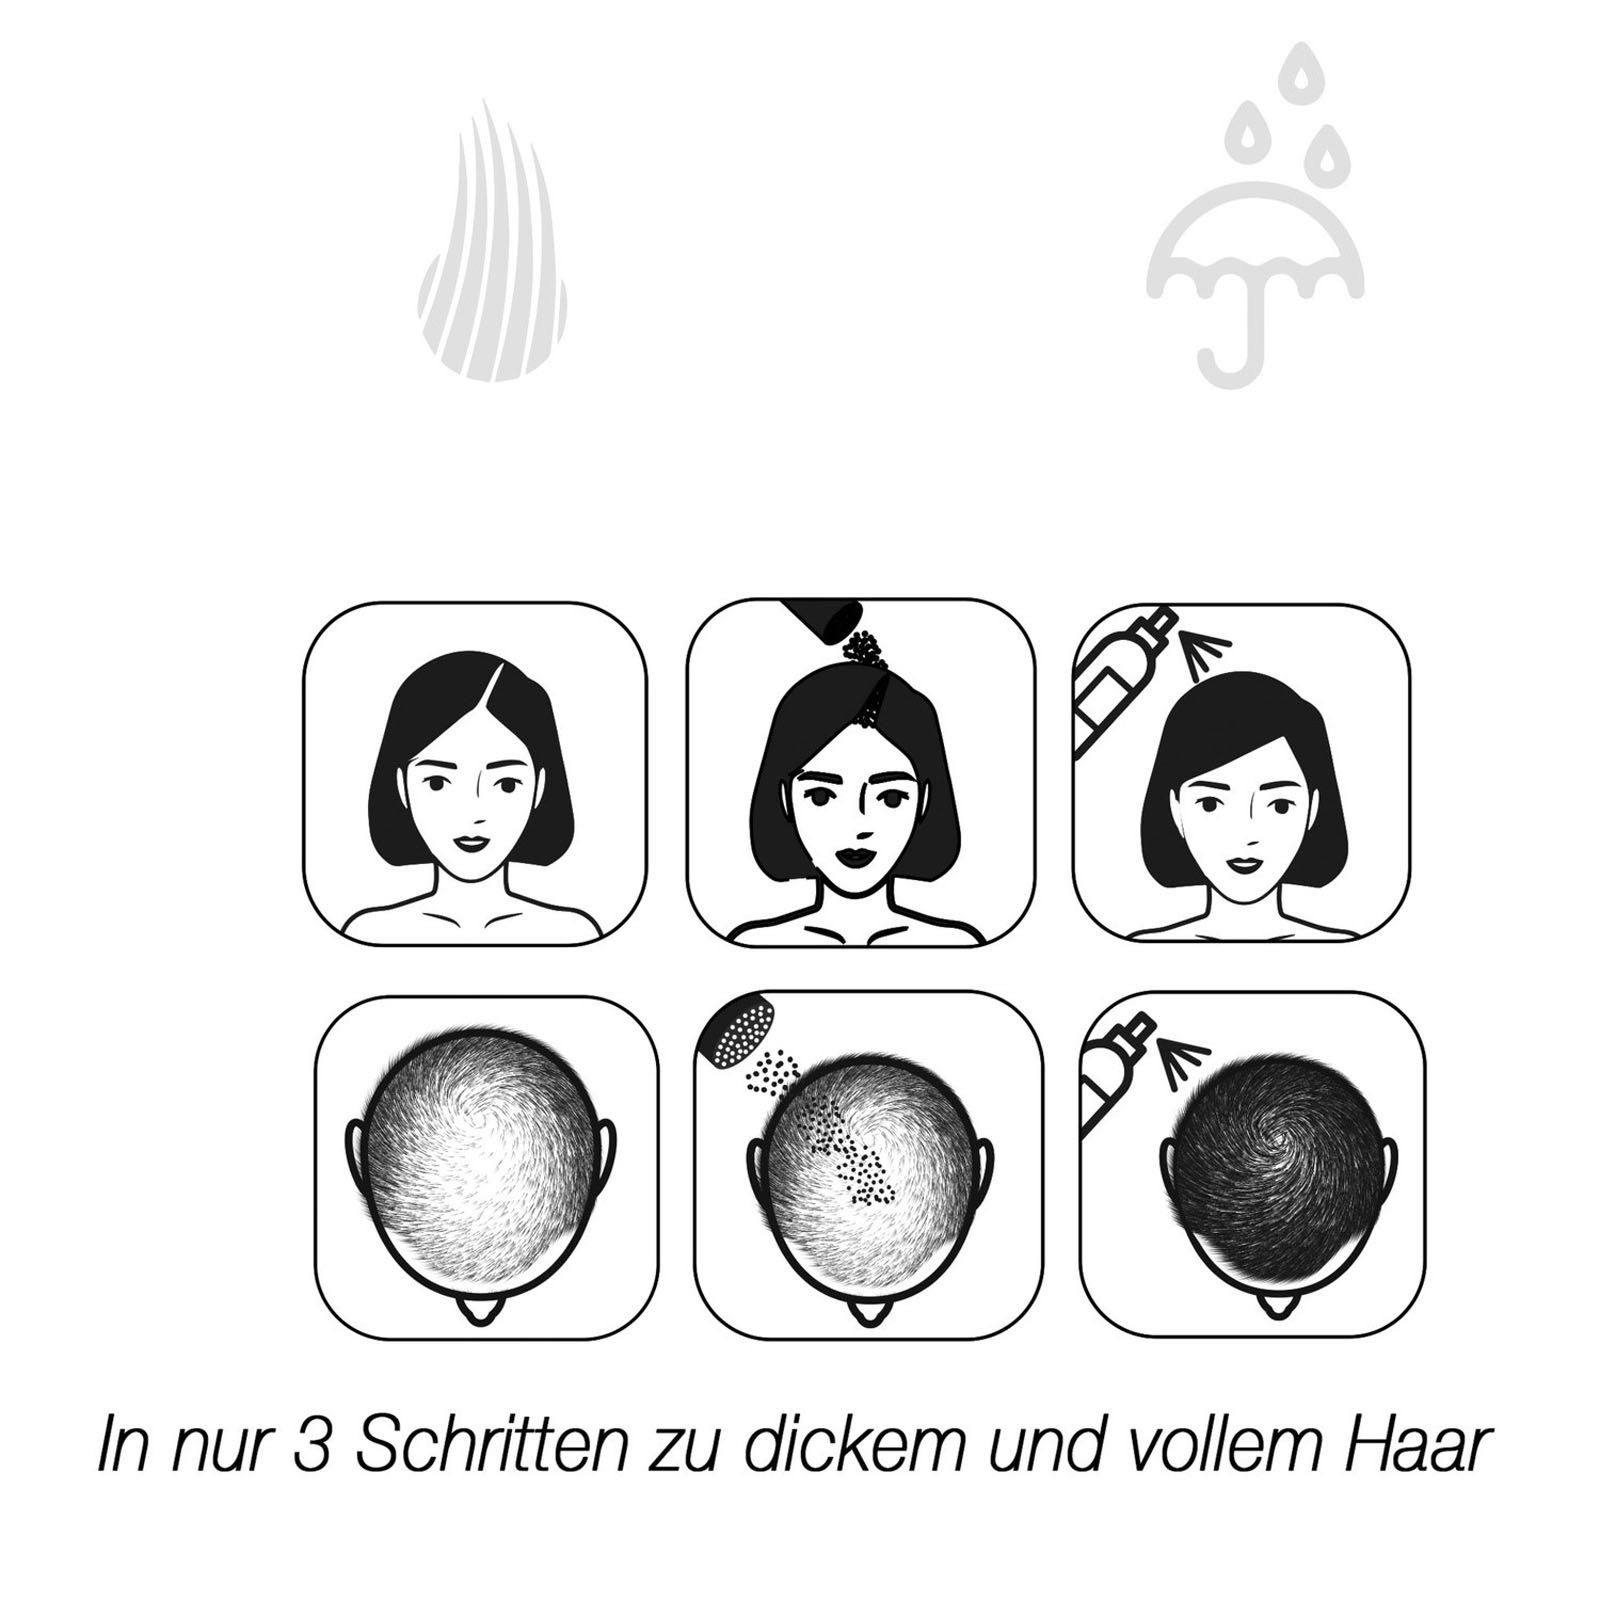 Premium Haarverdichtung, Zenna Volumenpuder Streuhaar 22g Haarauffüller, Schütthaar Mittelbraun Haarpulver zur